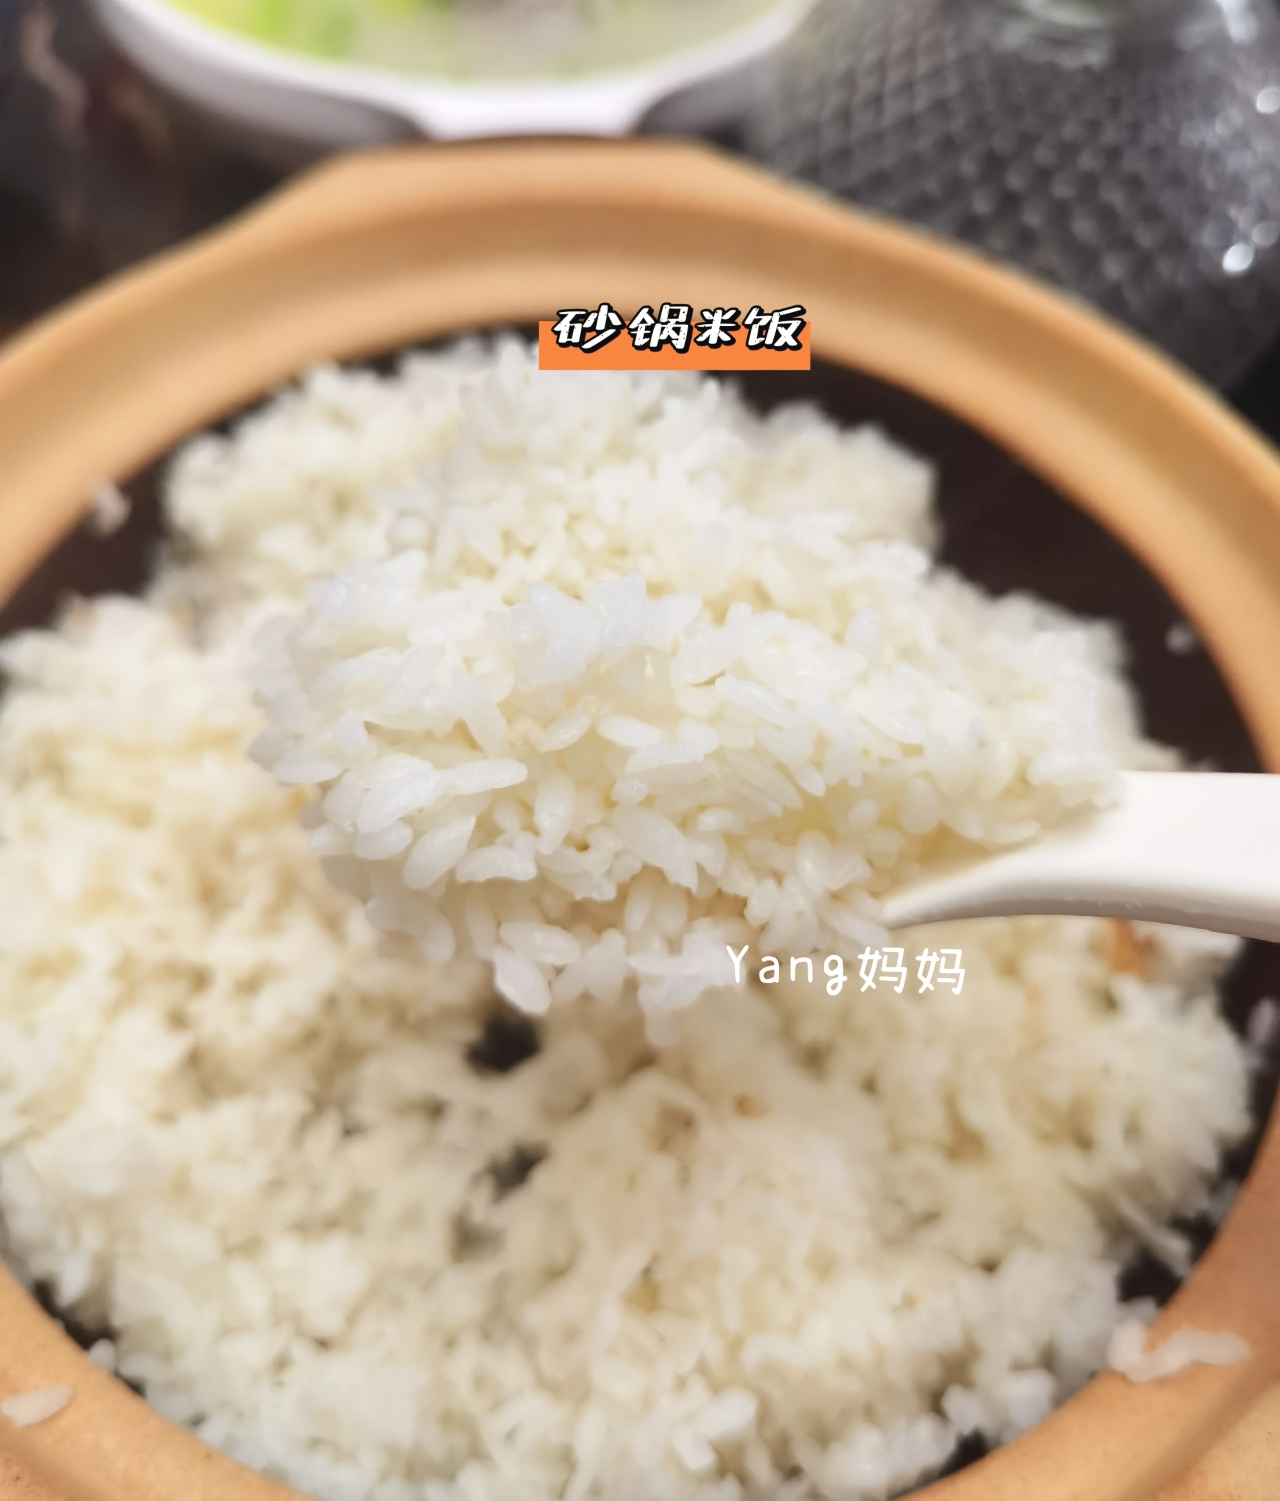 教你如何用砂锅煮米饭